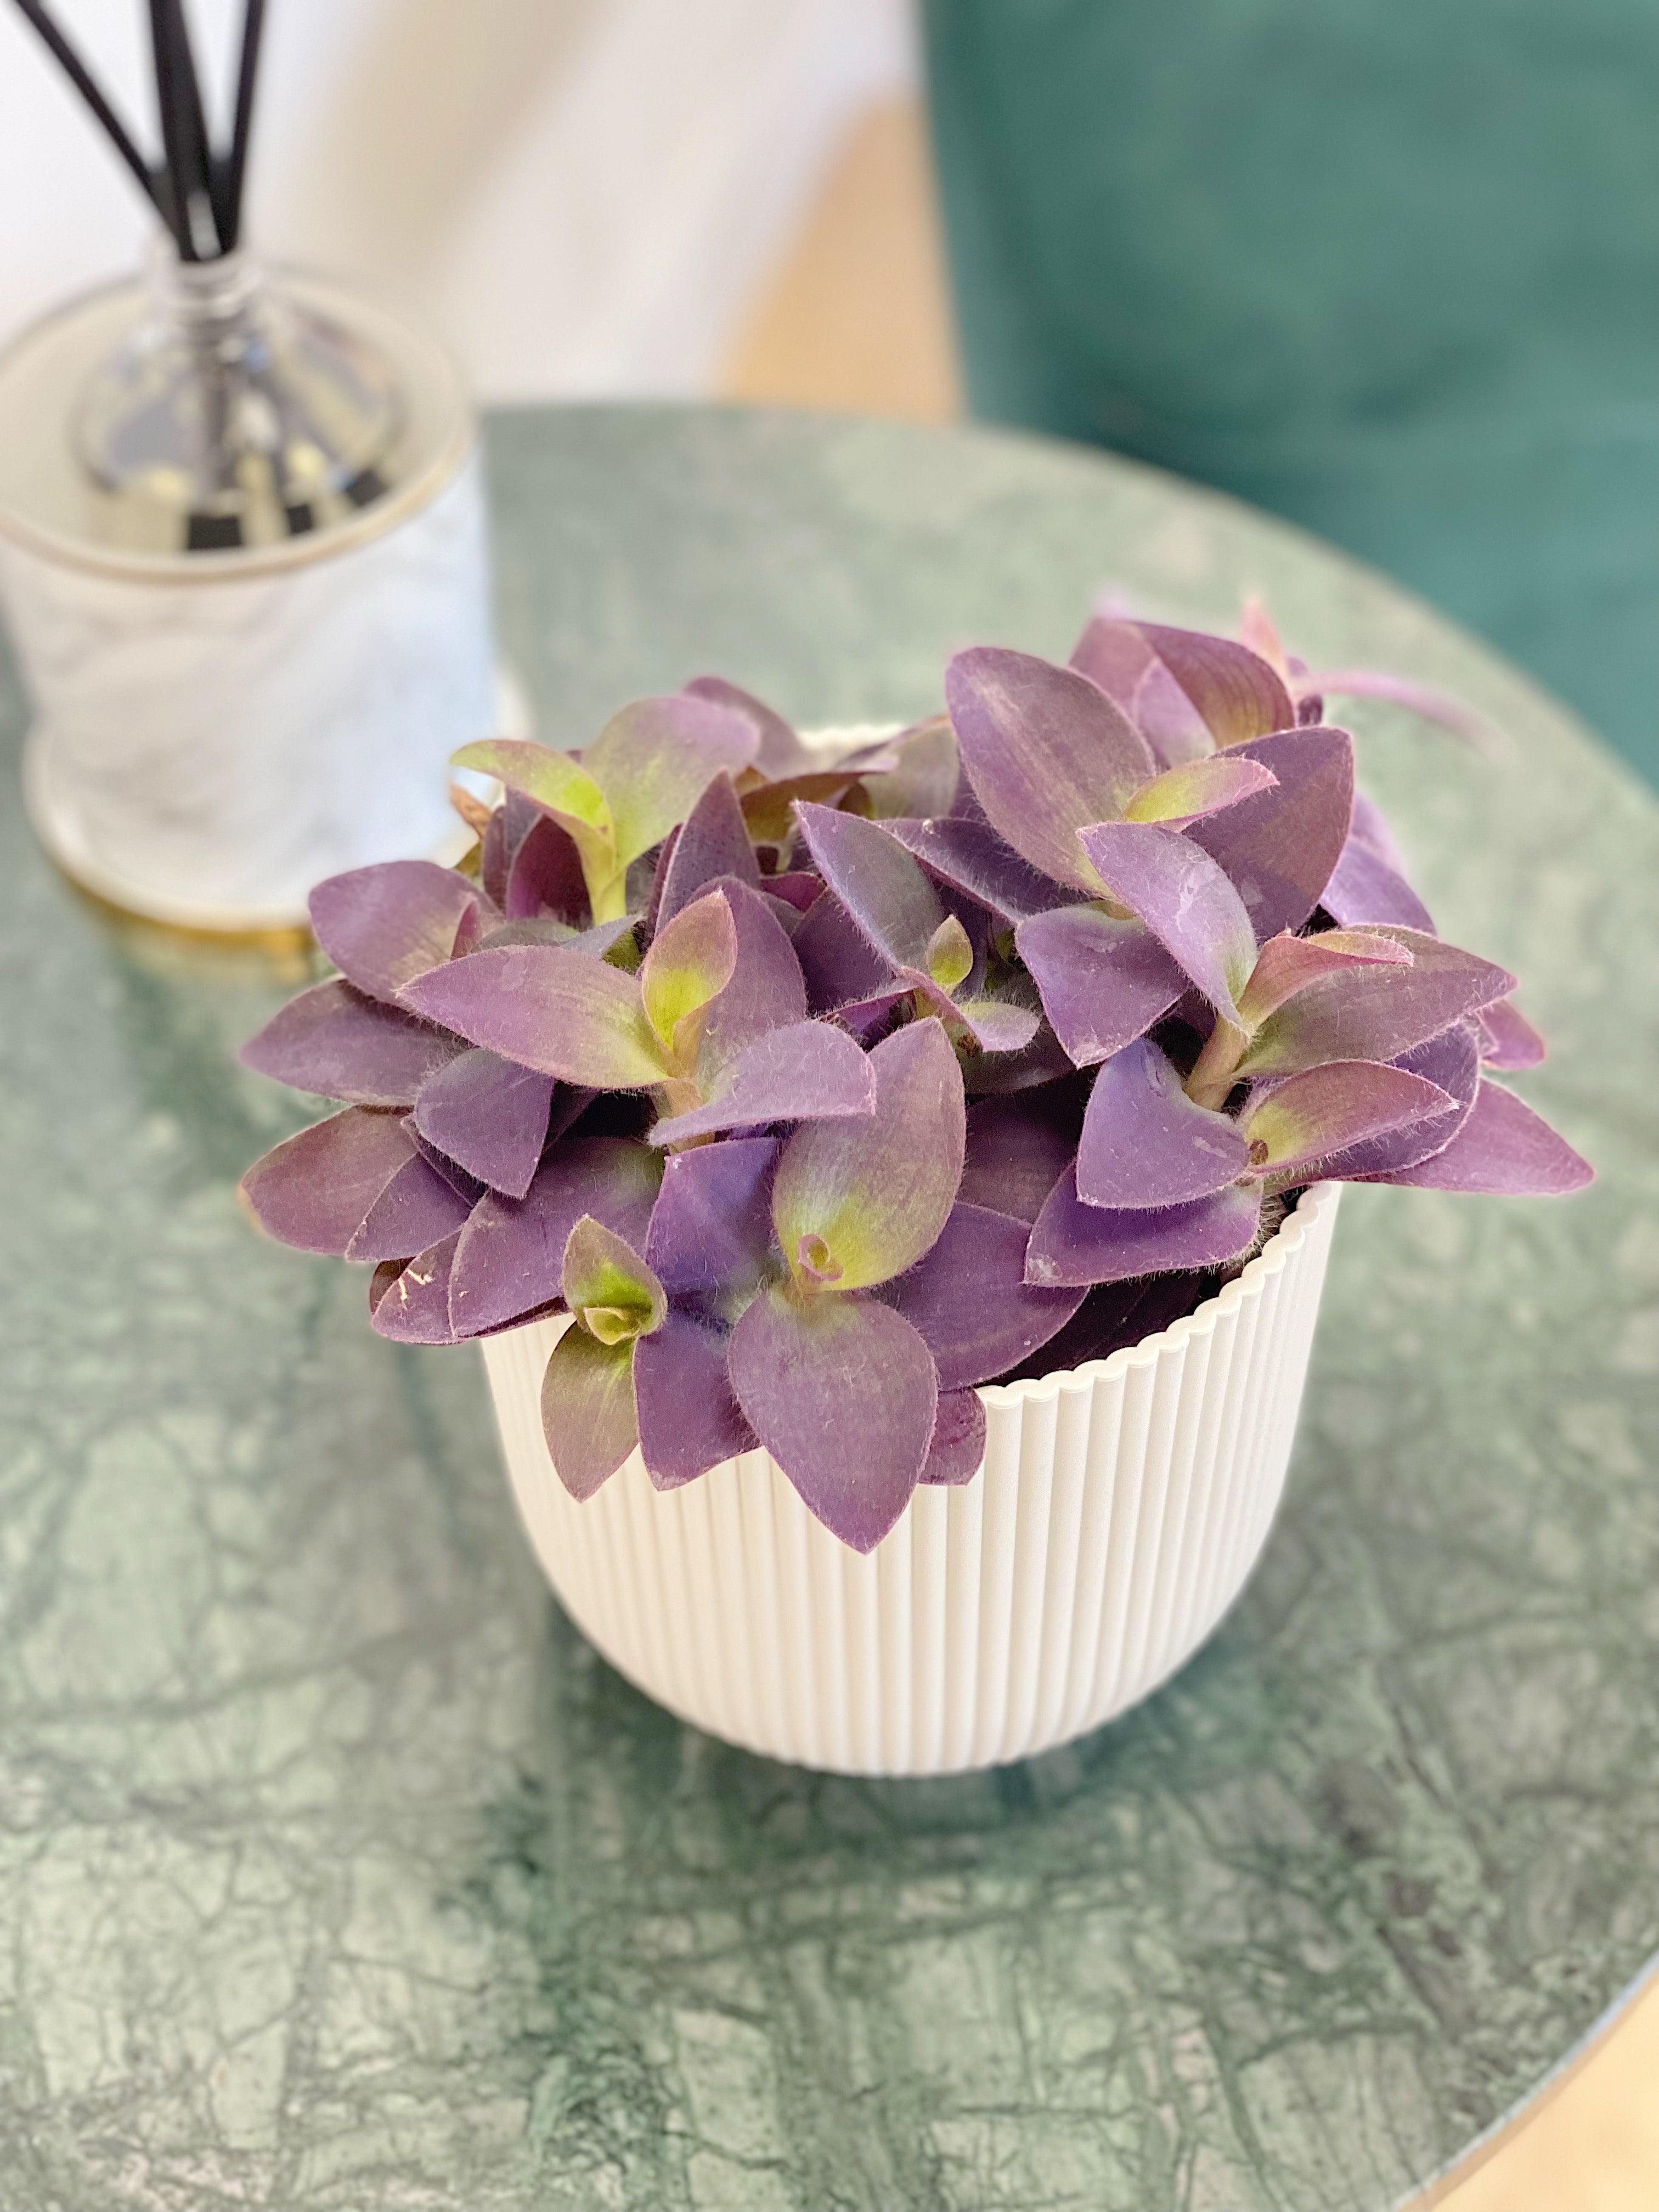 Japanese wisteria 'Royal Purple' (Wisteria floribunda 'Royal Purple')  Flower, Leaf, Care, Uses - PictureThis